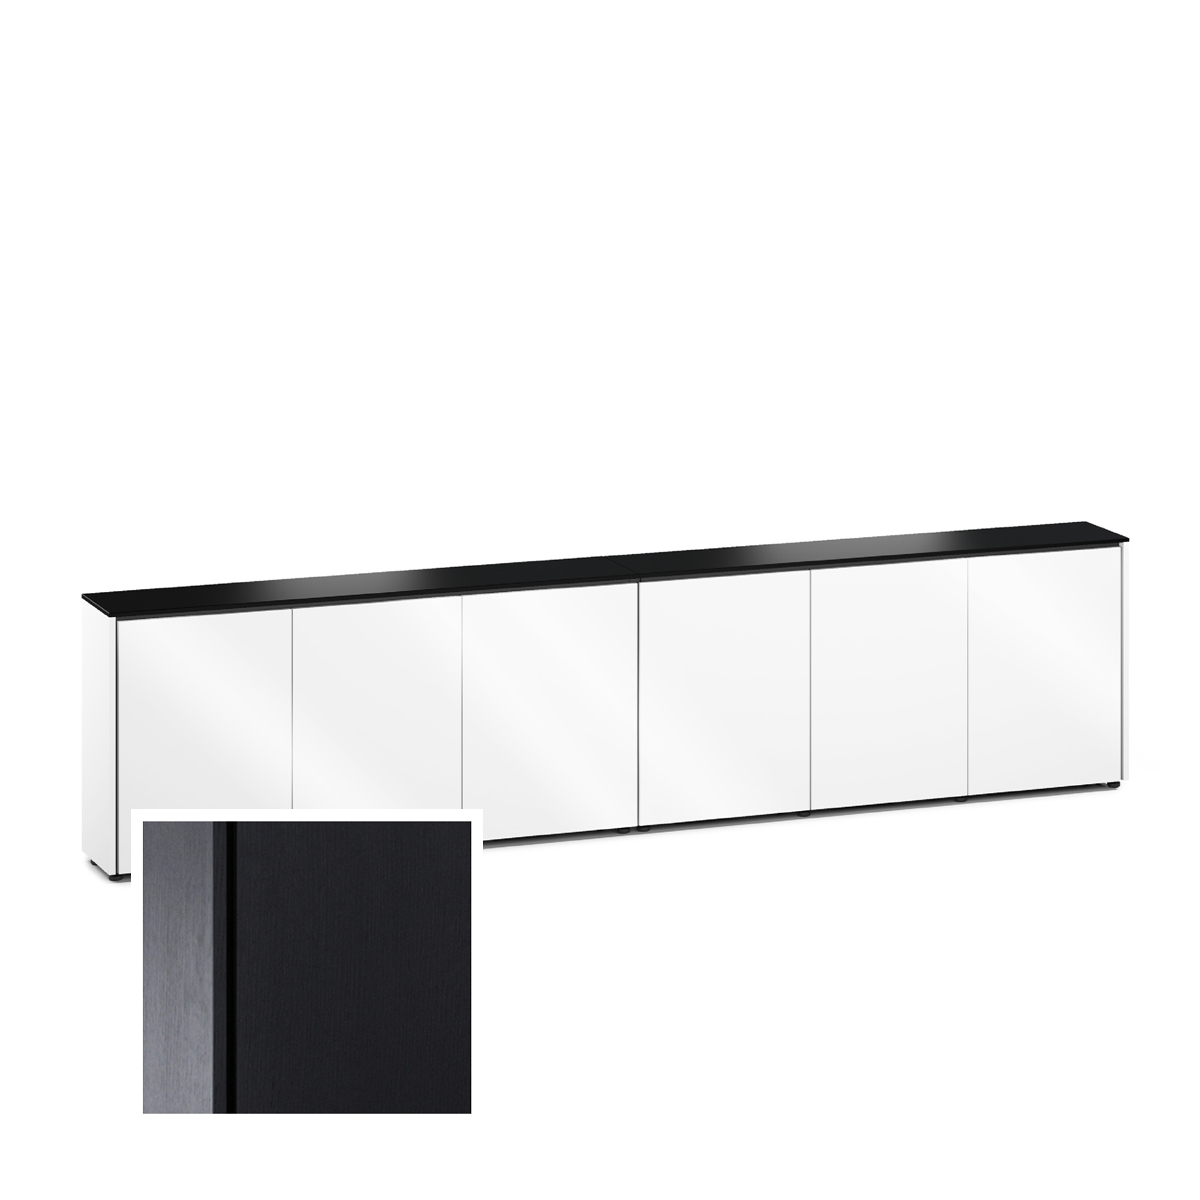 D1/367A/SN/BO 6 Bay Low-Profile, Wall Cabinet, Sienna- Black Oak